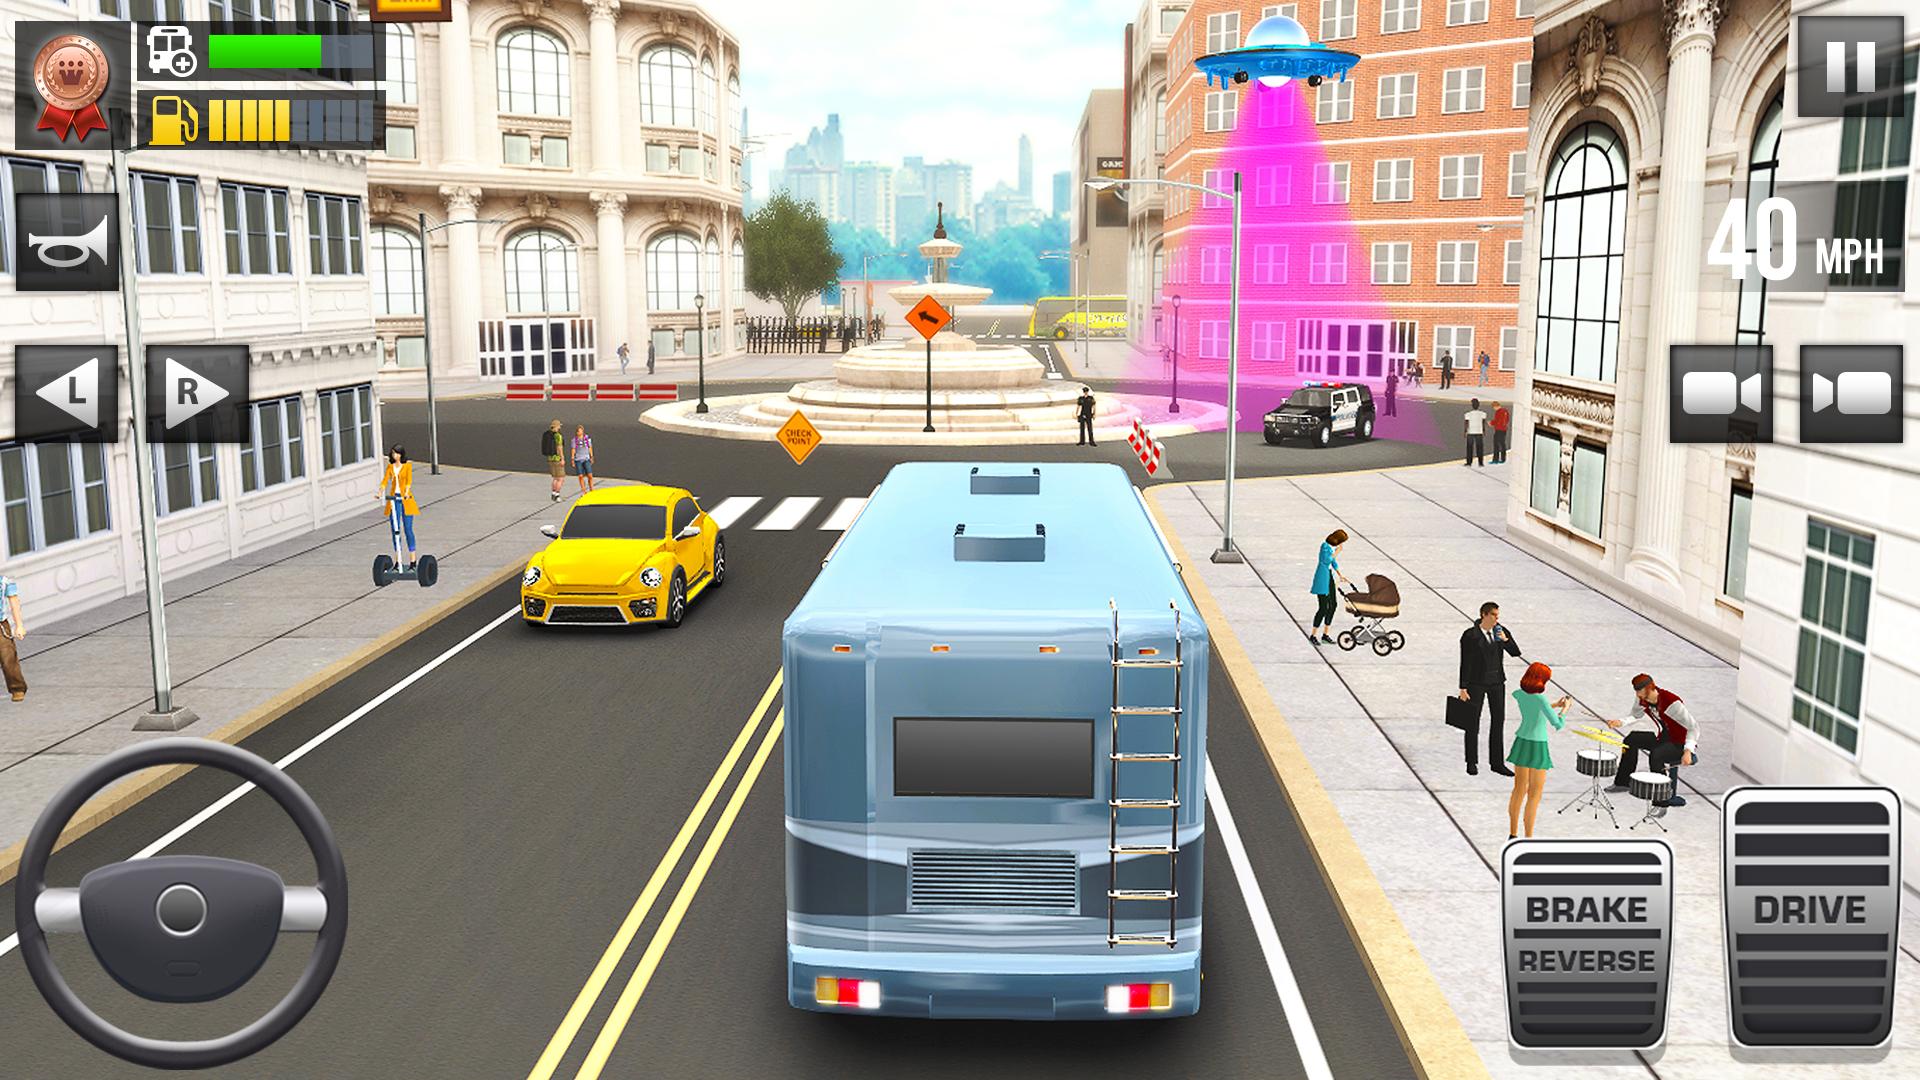 Ultimate Bus Driving - 3D Driver Simulator 2020 1.9 Screenshot 2